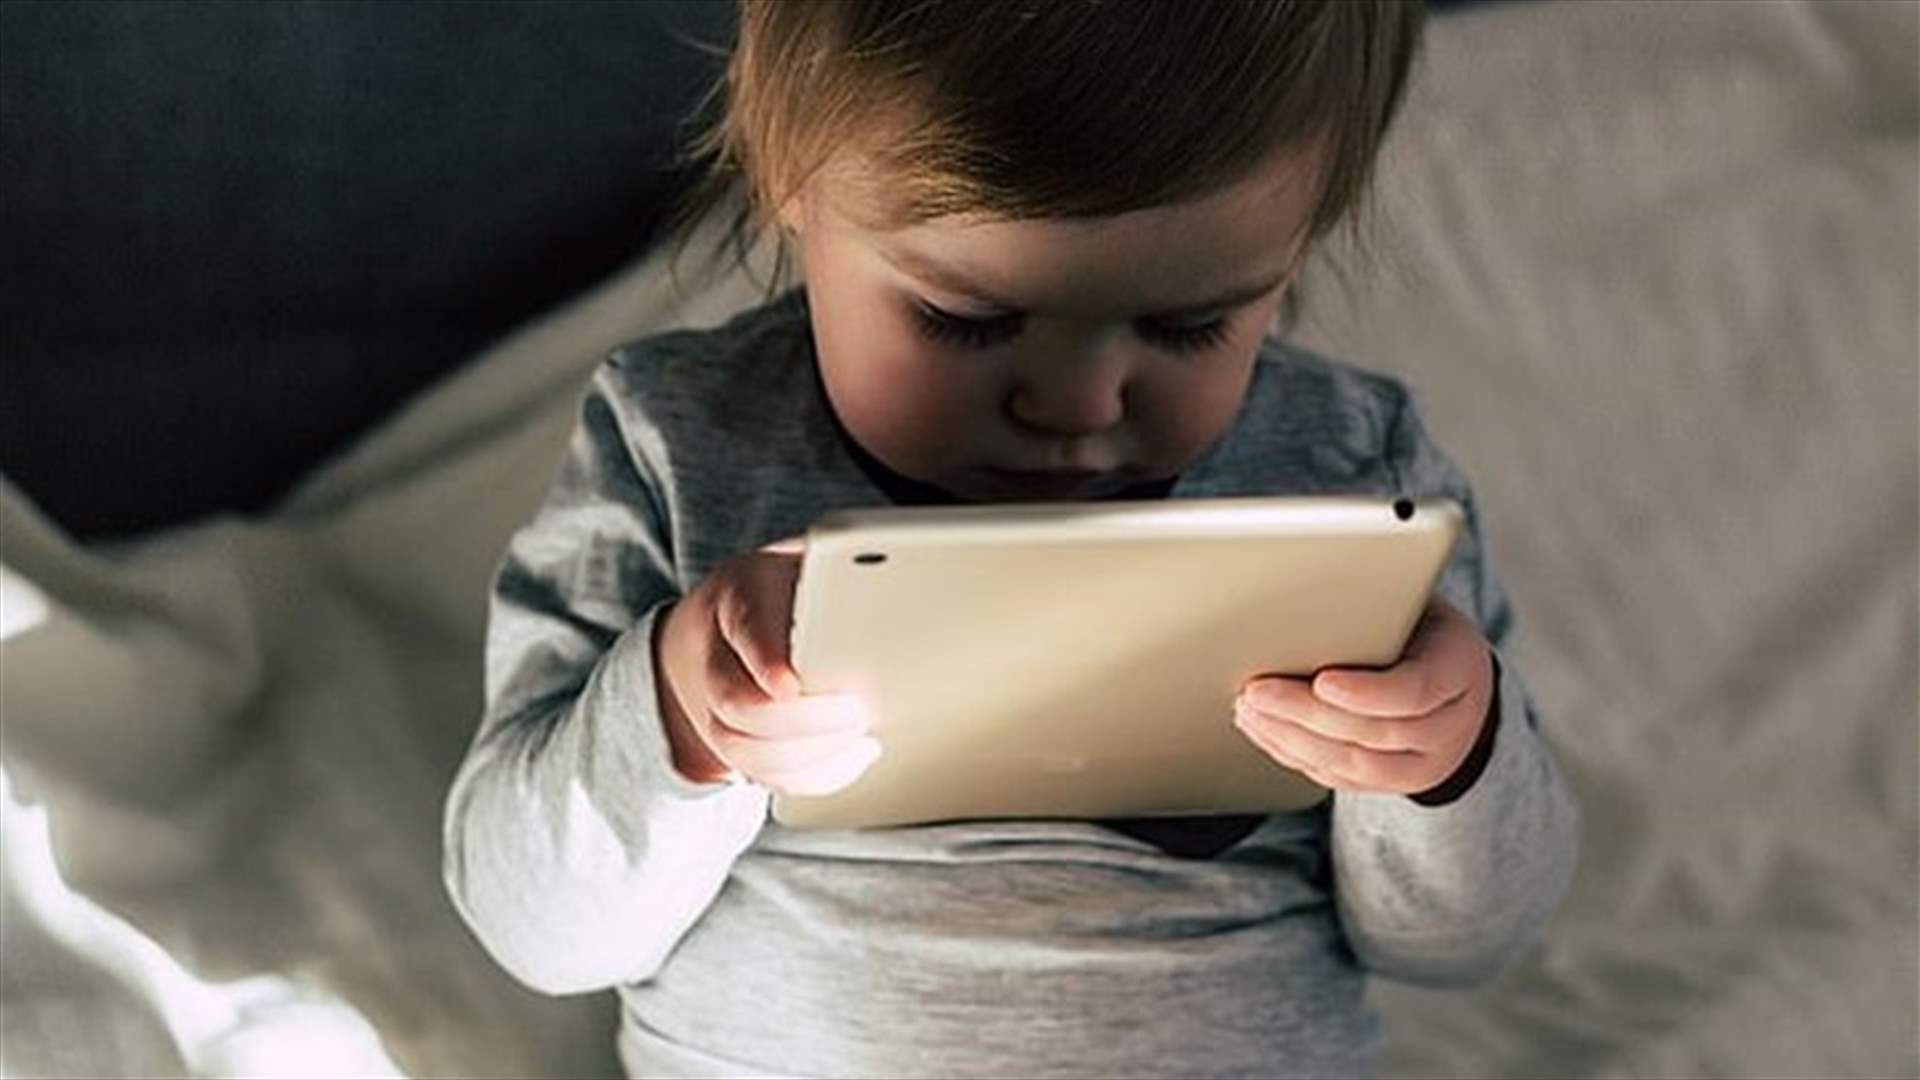 تأثير الأجهزة الإلكترونية على الأطفال تابع... ماذا كشفت دراسة جديدة؟